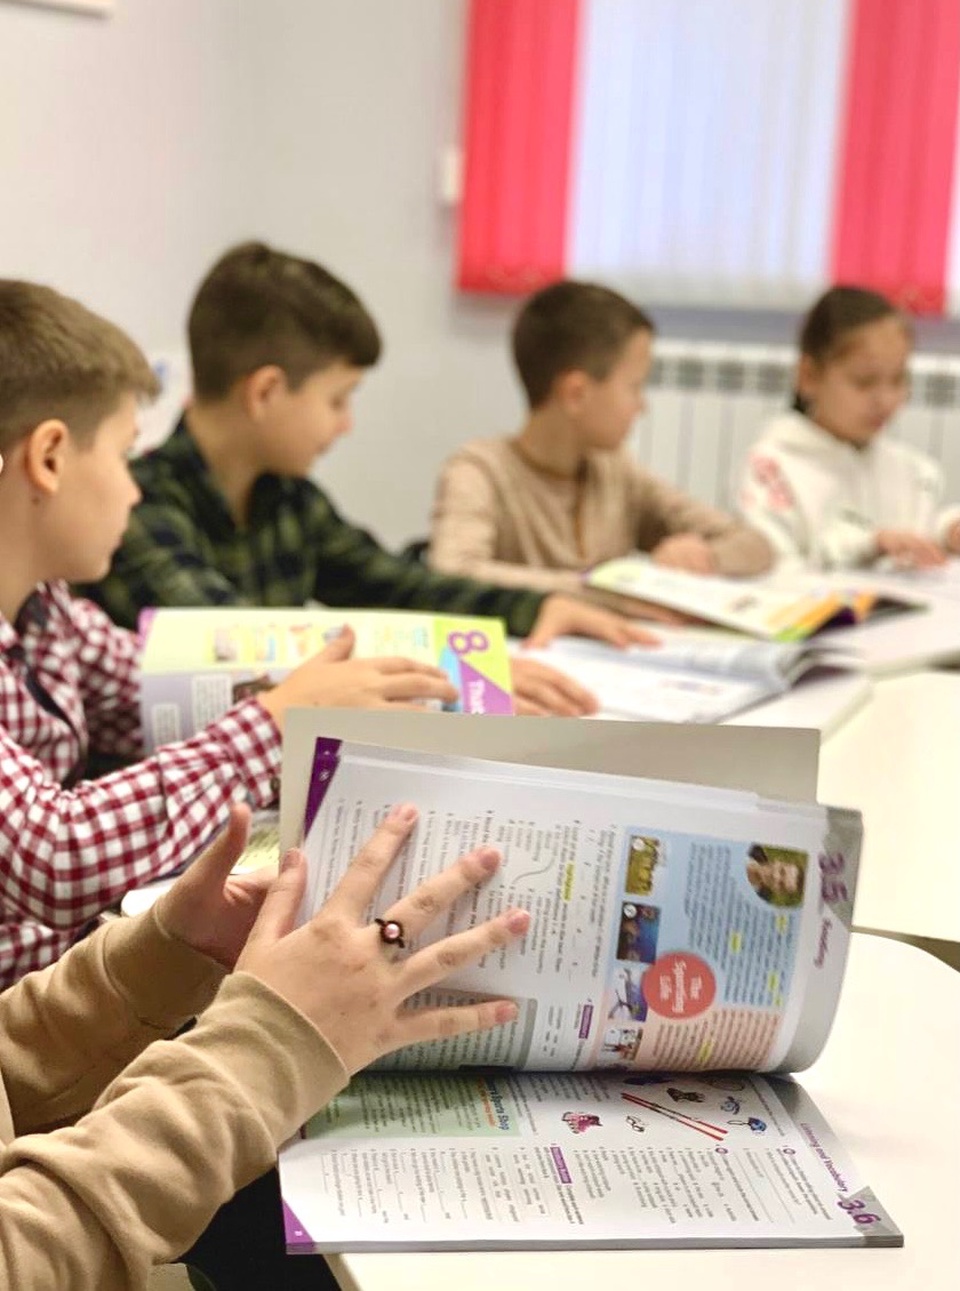 Образовательный центр «Good School» - Пятигорск